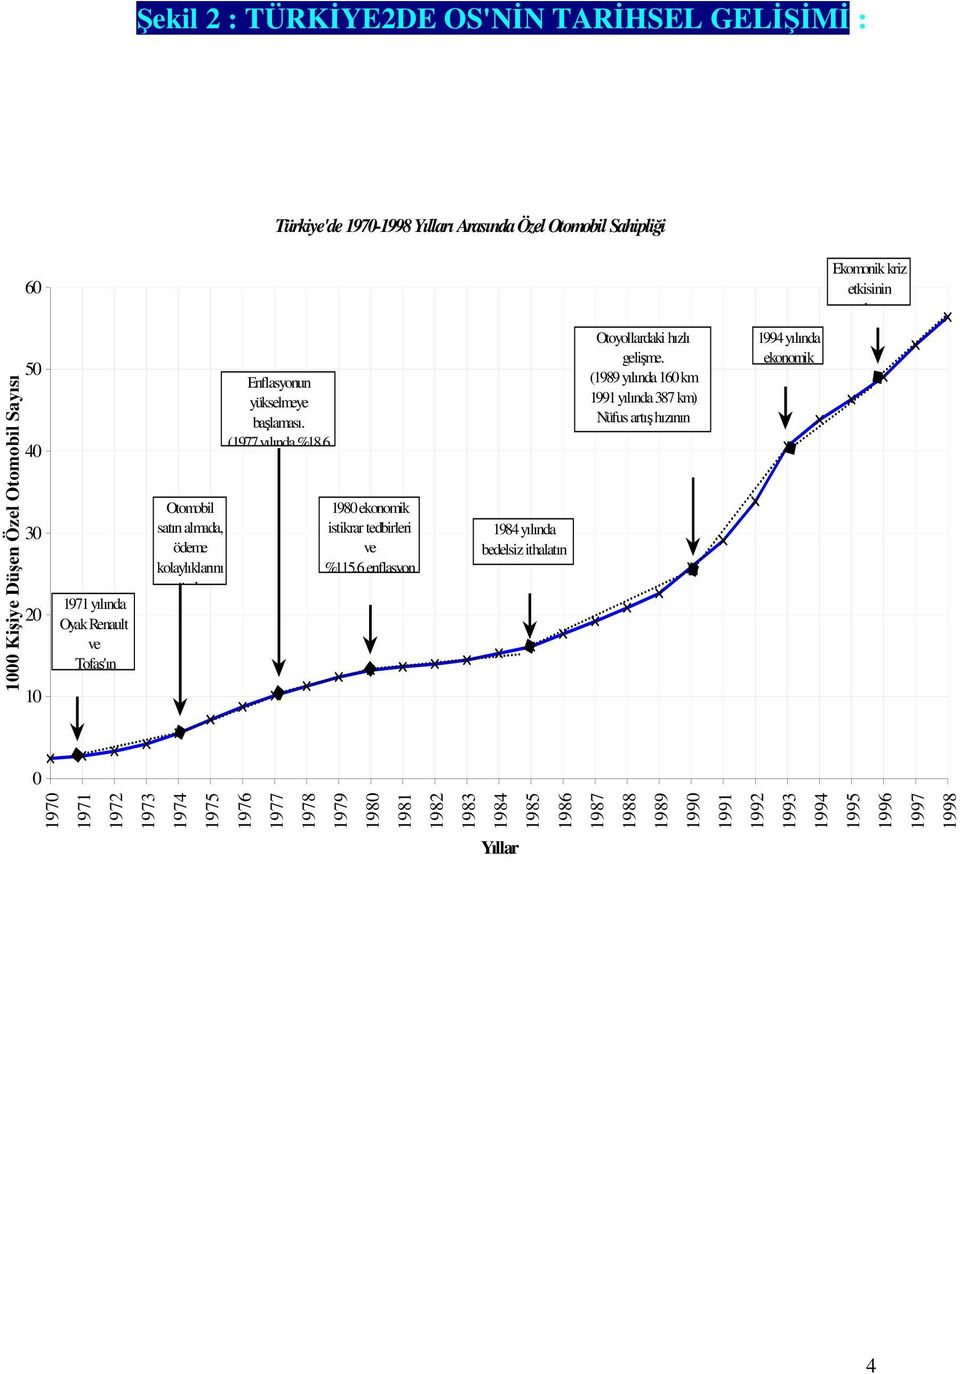 (1977 yılında %18,6 1980 ekonomik istikrar tedbirleri ve %115,6 enflasyon 1984 yılında bedelsiz ithalatın balaması Otoyollardaki hızlı gelime.